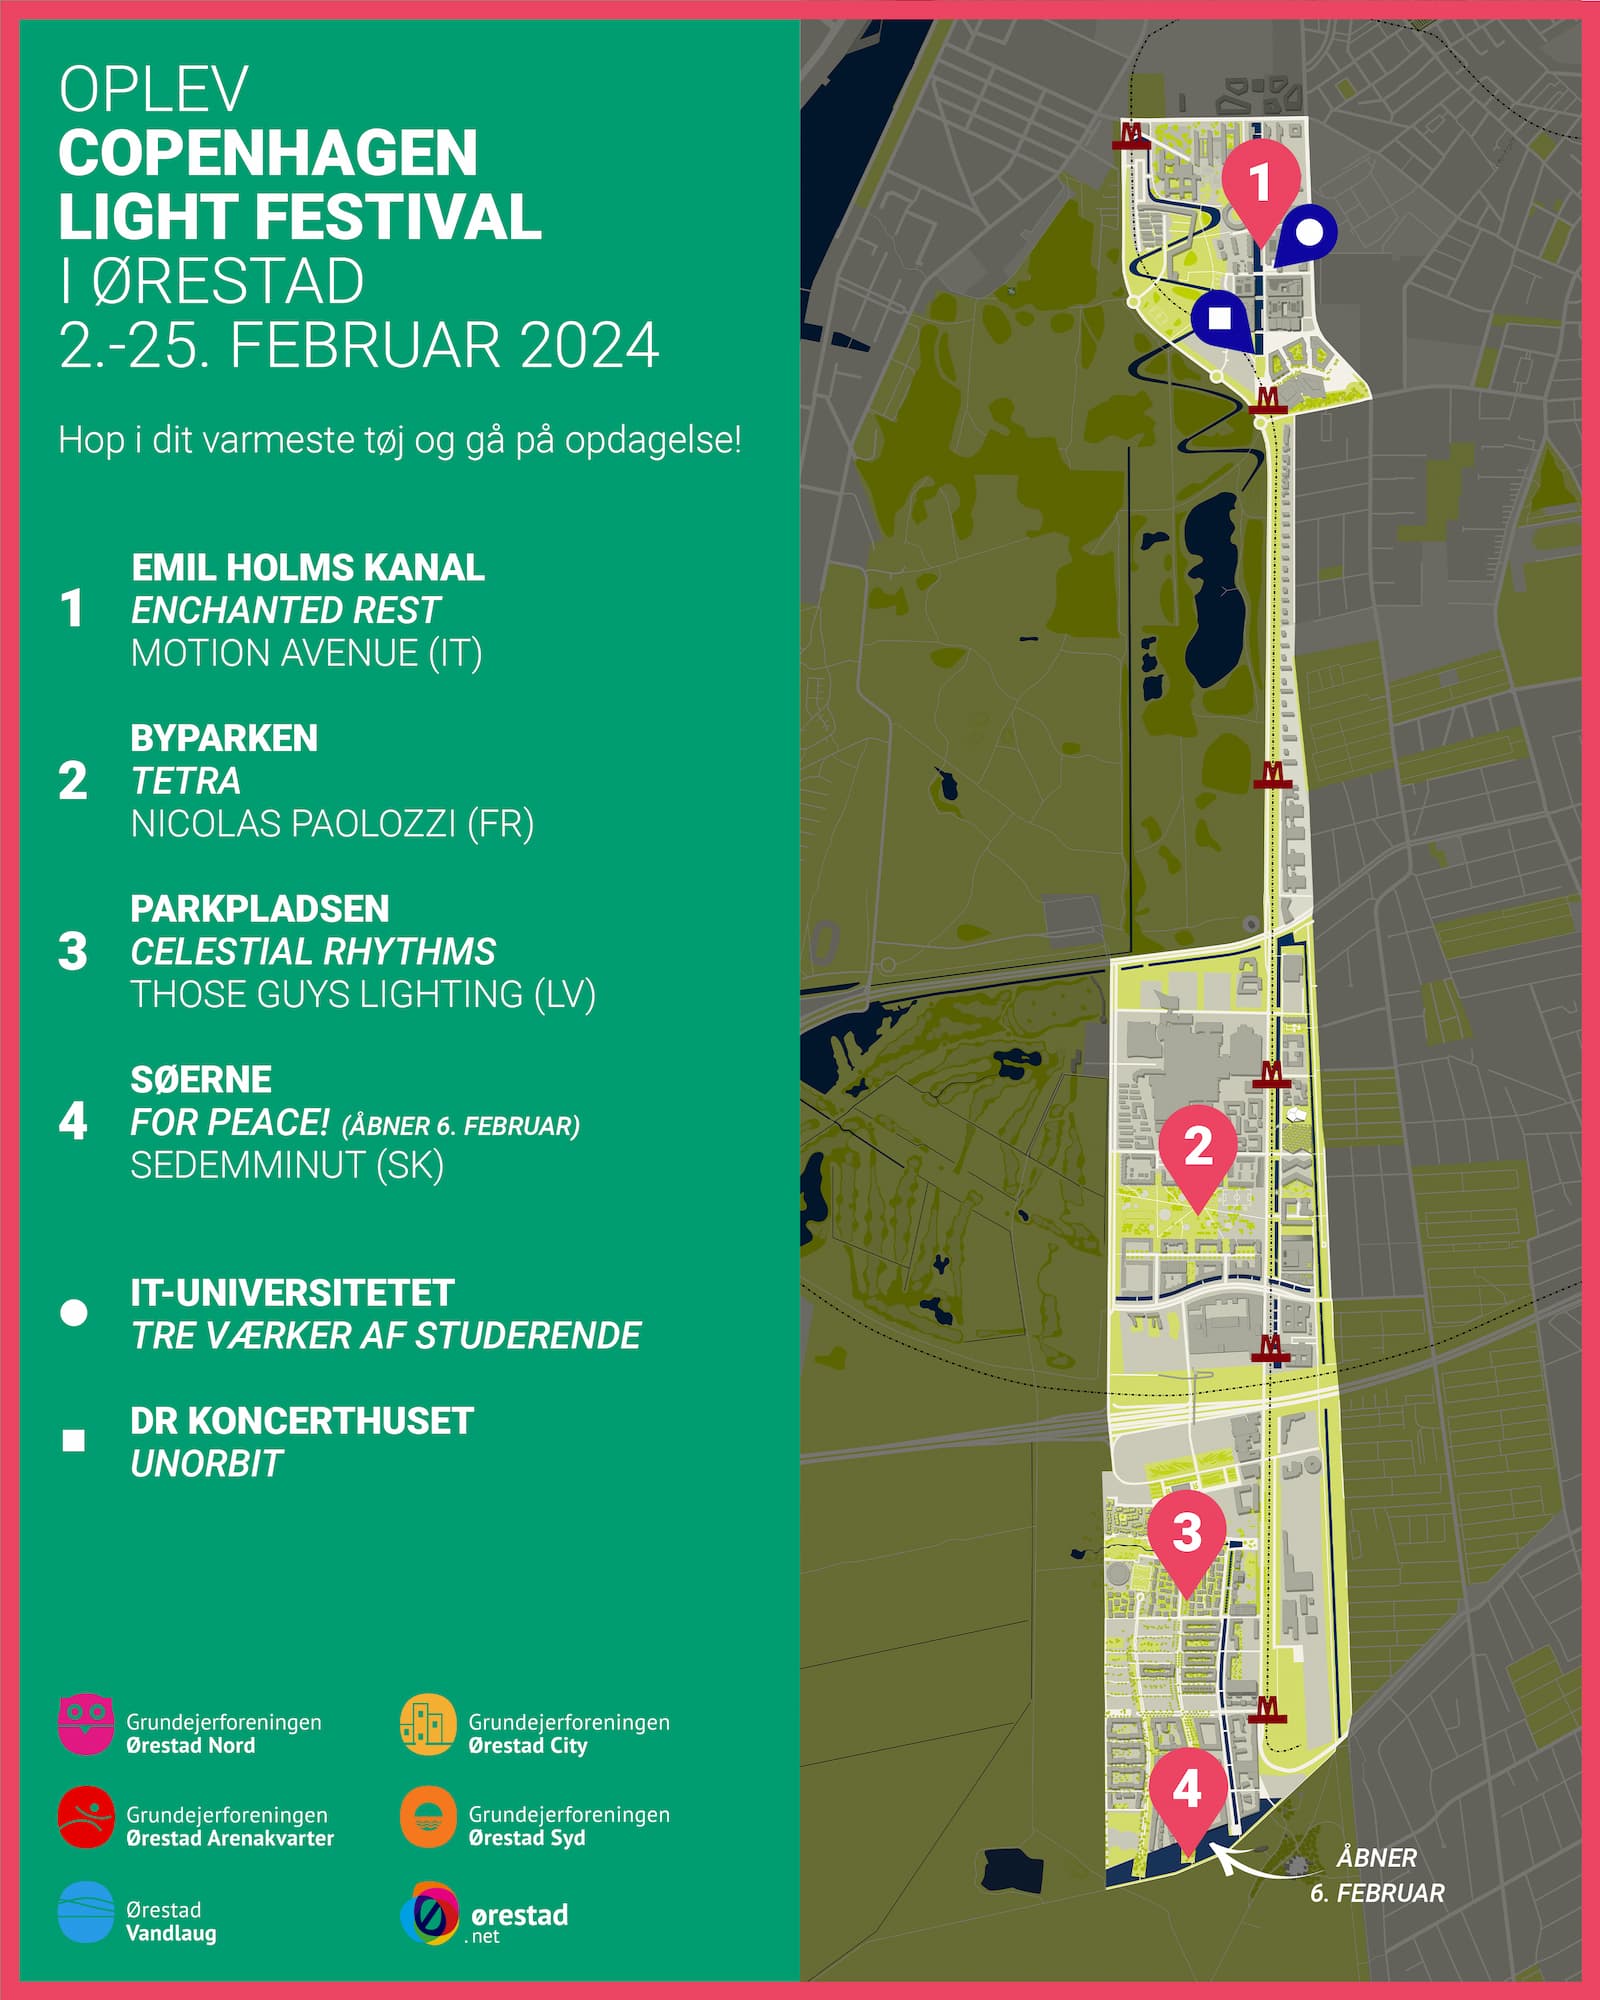 Kort over værker i Ørestad under Copenhagen Light Festival. Opdateret 2. februar 2024.